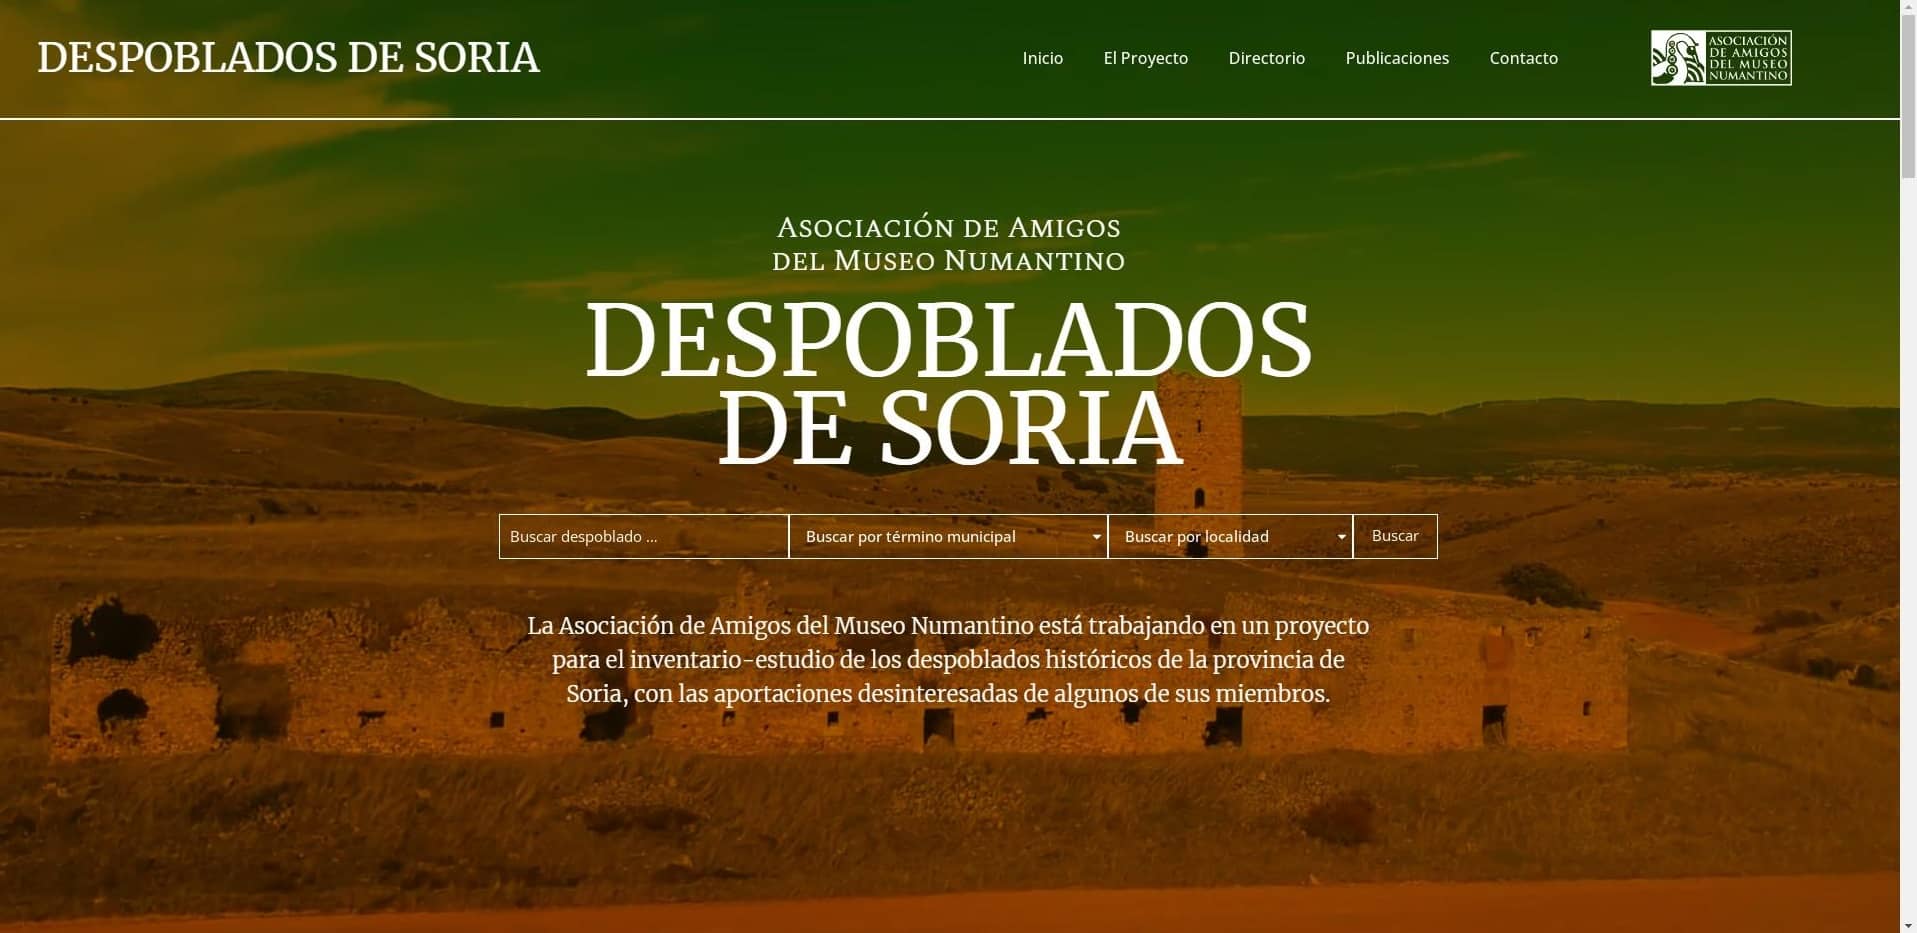 Presentación de la web sobre “Despoblados de Soria”